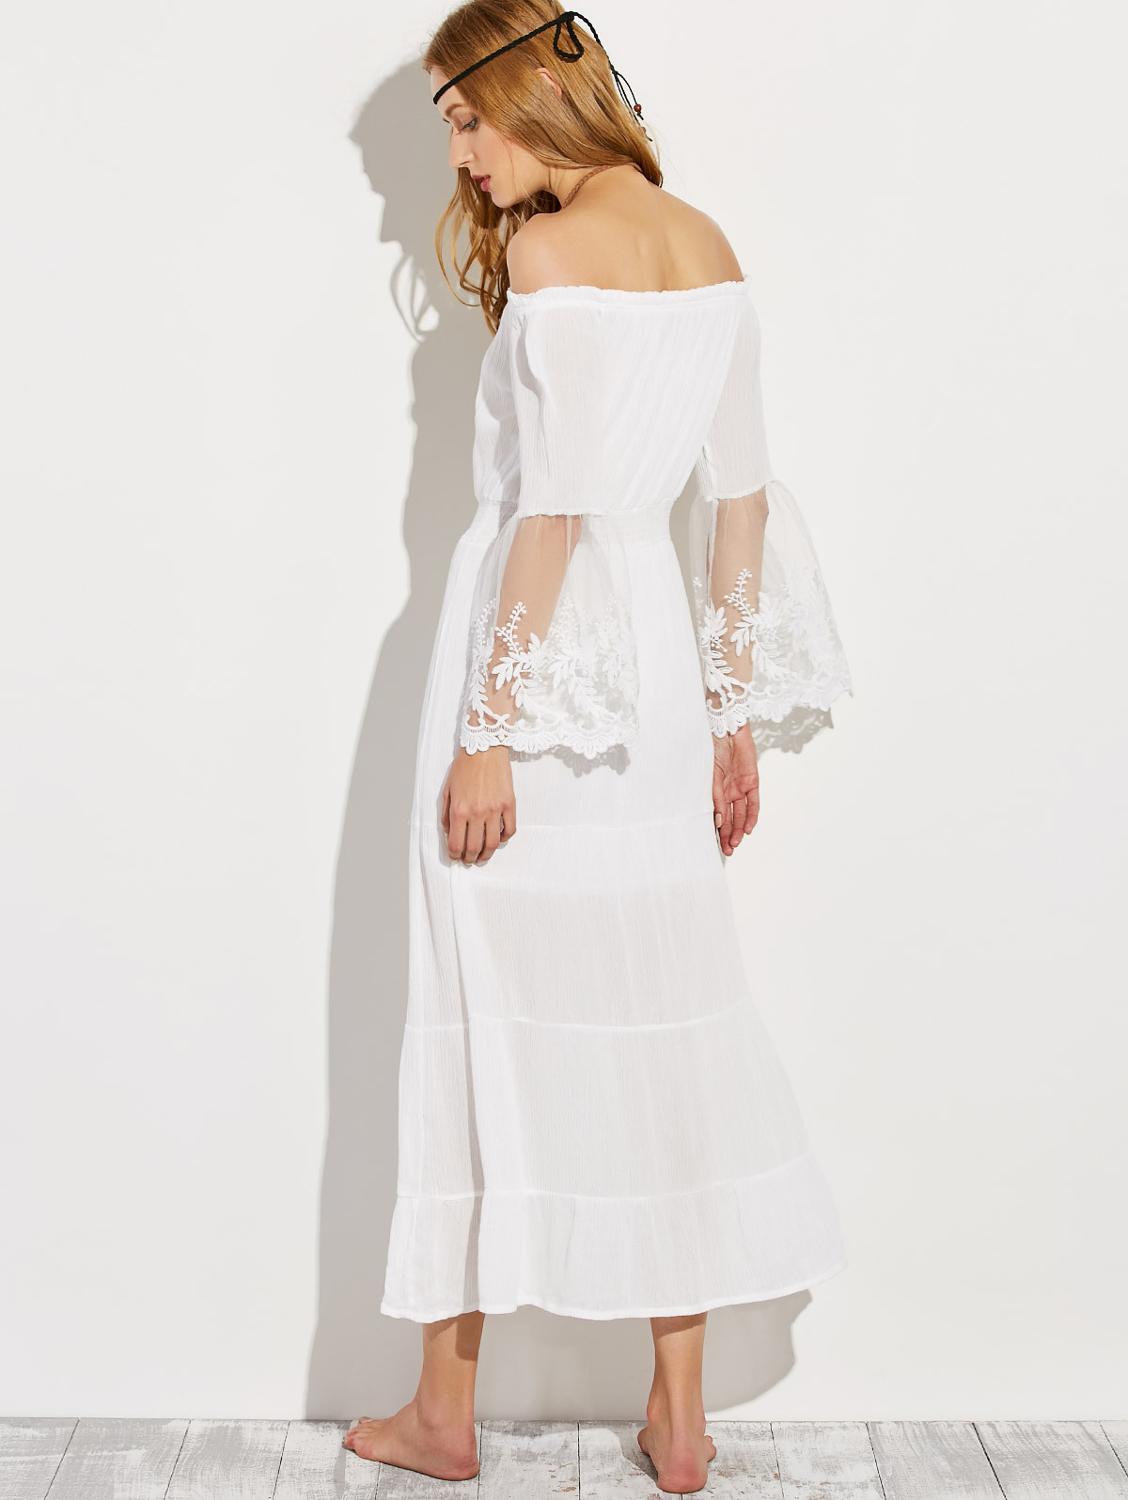 Boho White Sheer Lace Dress Summer Sundress – sunifty